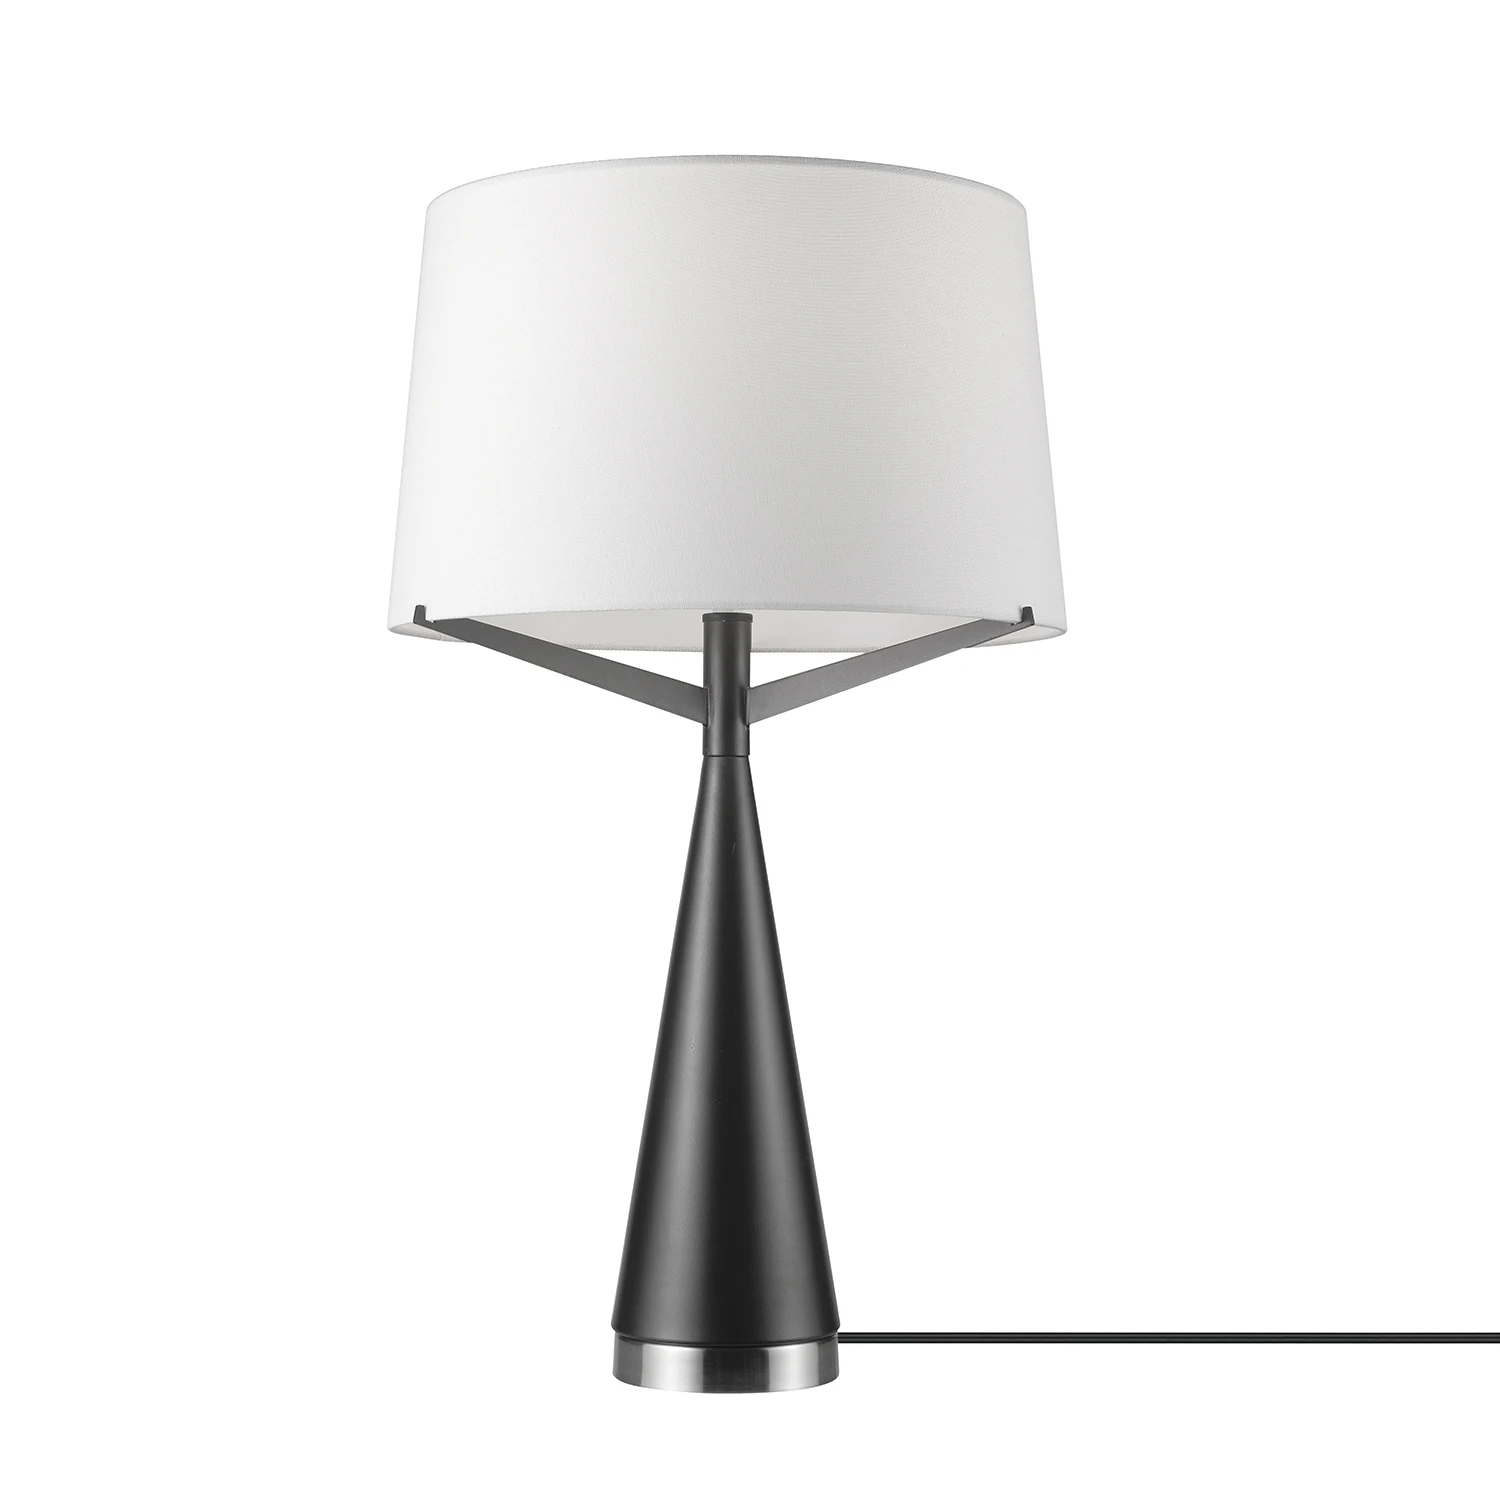 

HMTX Novogratz x Globe Levon 24" Dark Bronze Table Lamp with White Linen Shade, 67693